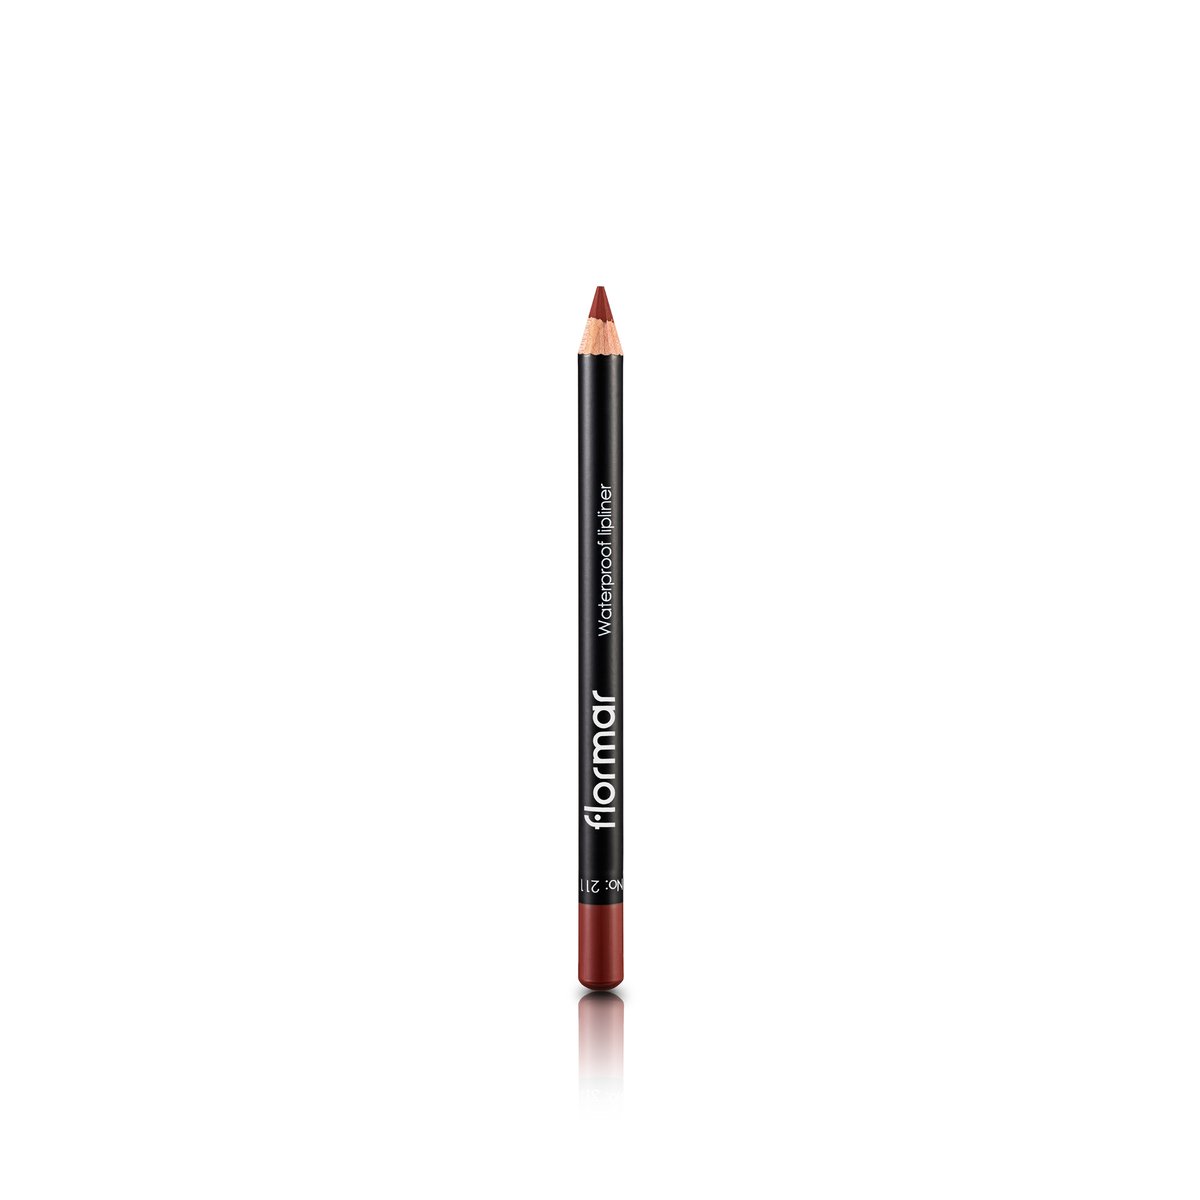 Flormar Waterproof Lipliner Pencil - 211 Classical Brown 1pc